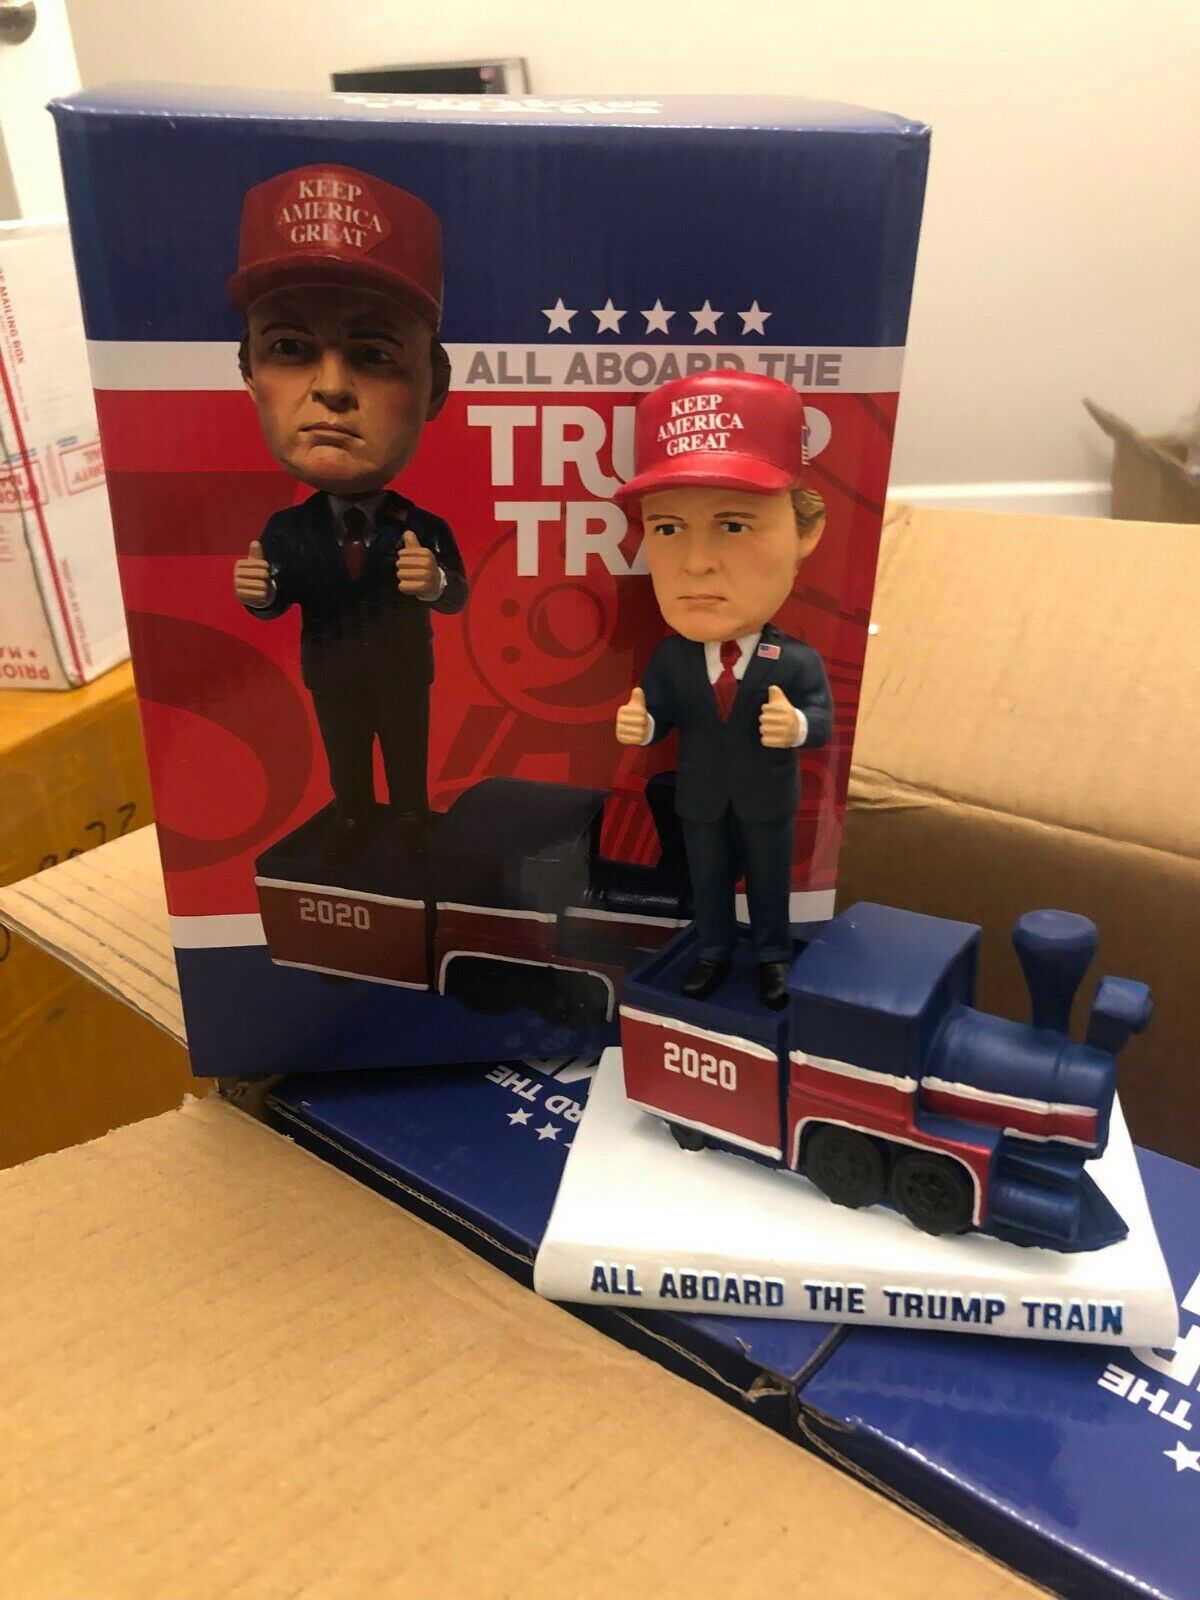 Donald Trump 2020 All Aboard The Trump Train Bobblehead Bobble Head New In Box